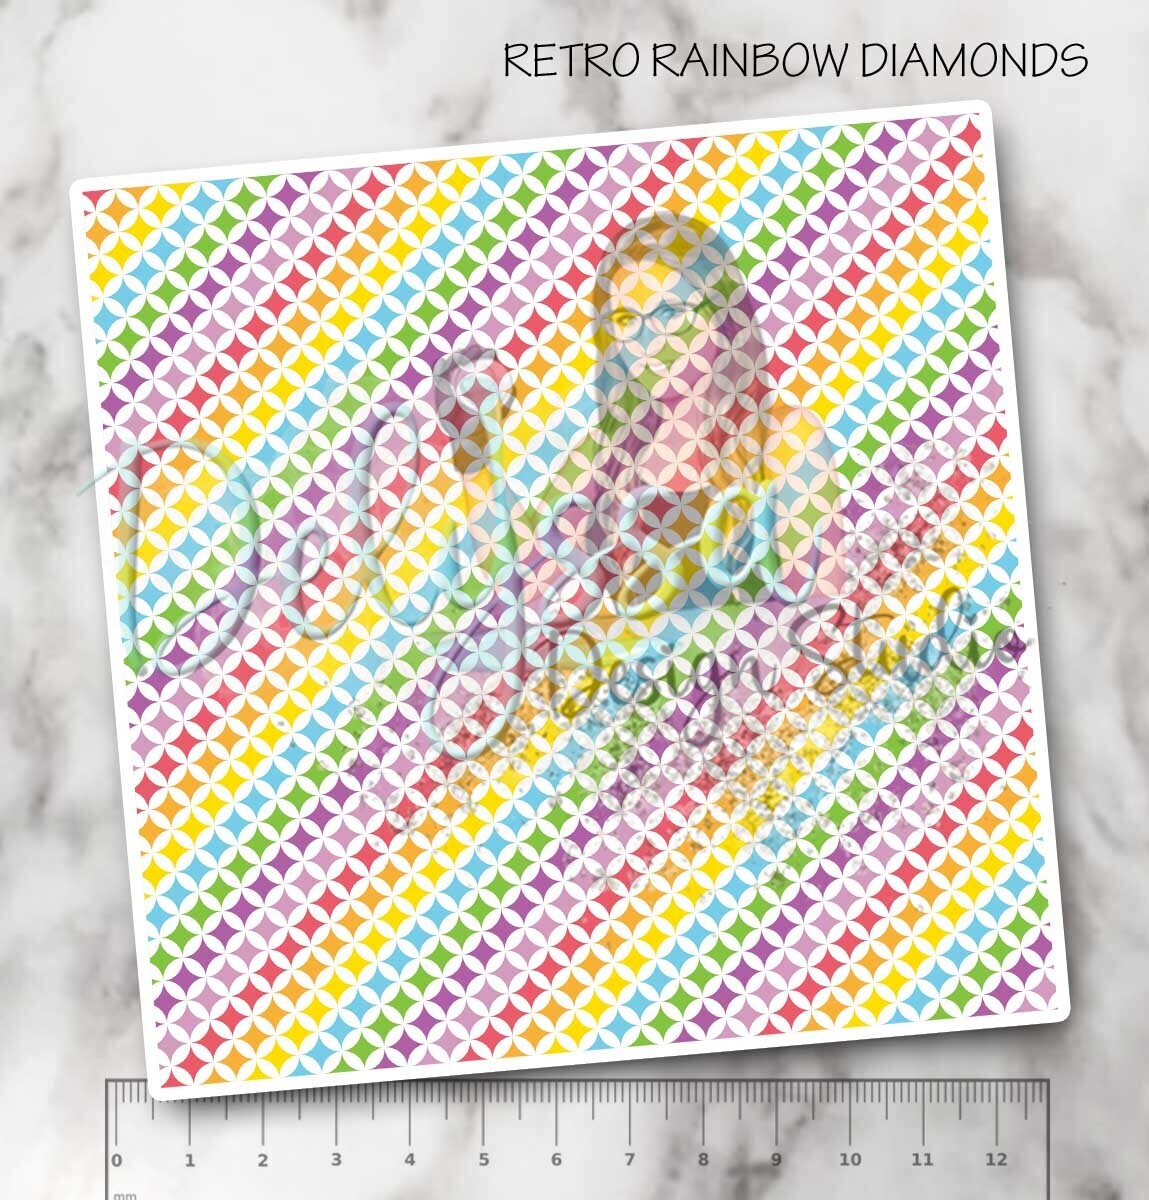 RETRO RAINBOW DIAMONDS 12"x12"